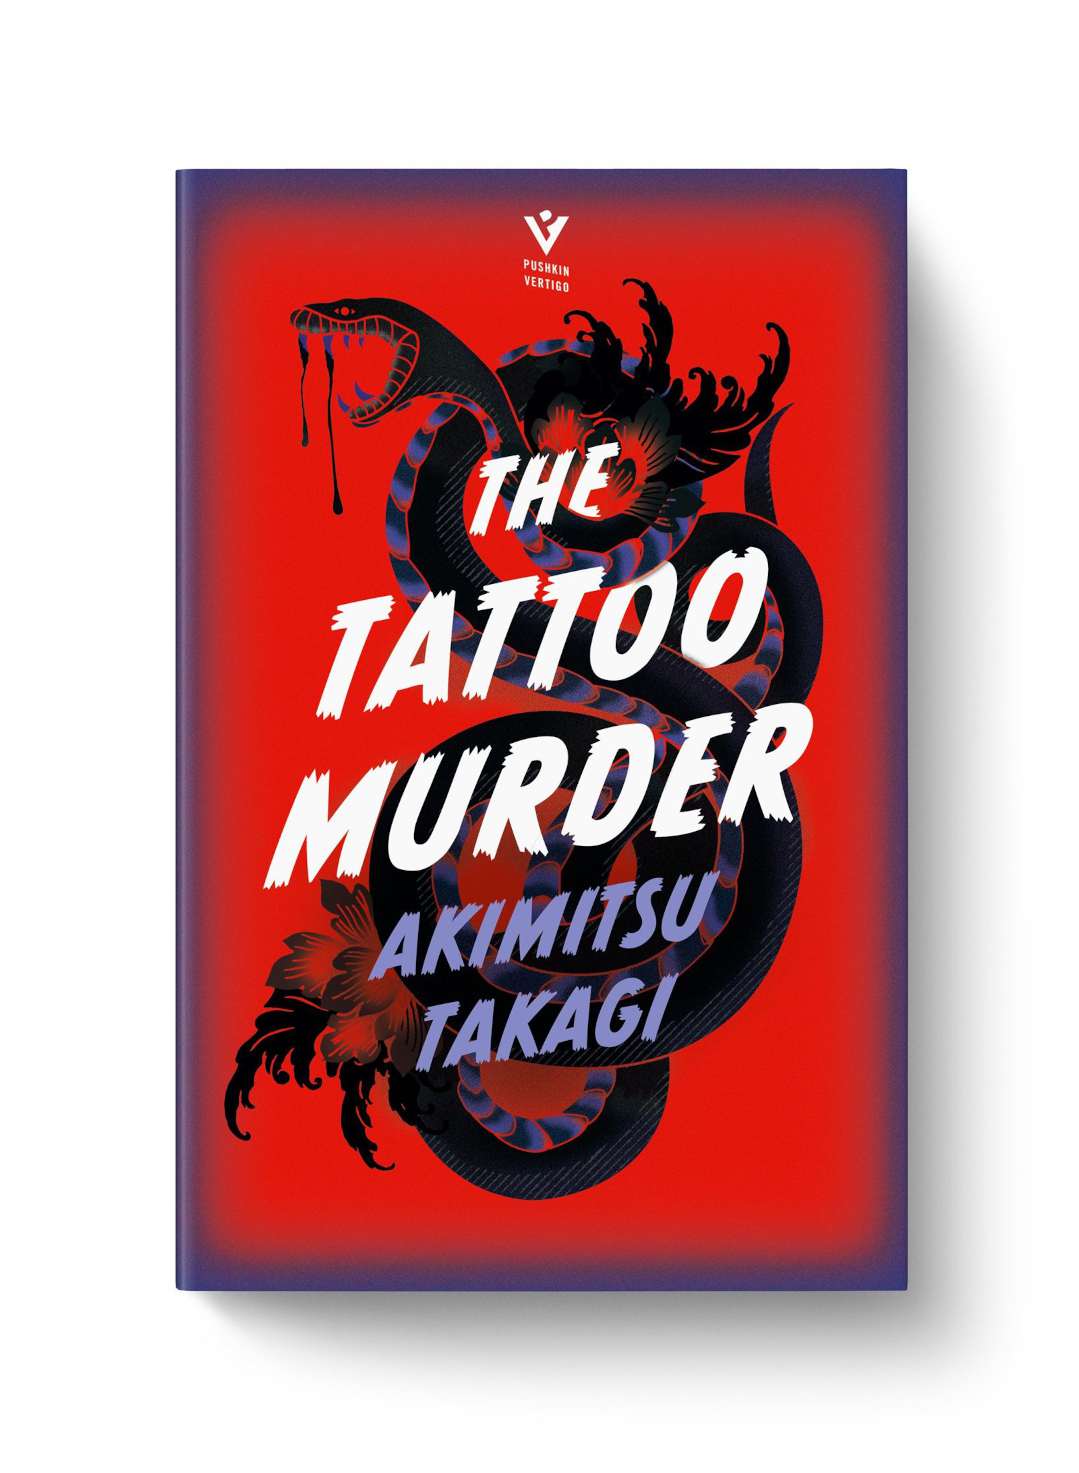 Published by pushkin Press, The Tattoo Murder by Akimitsu Takagi